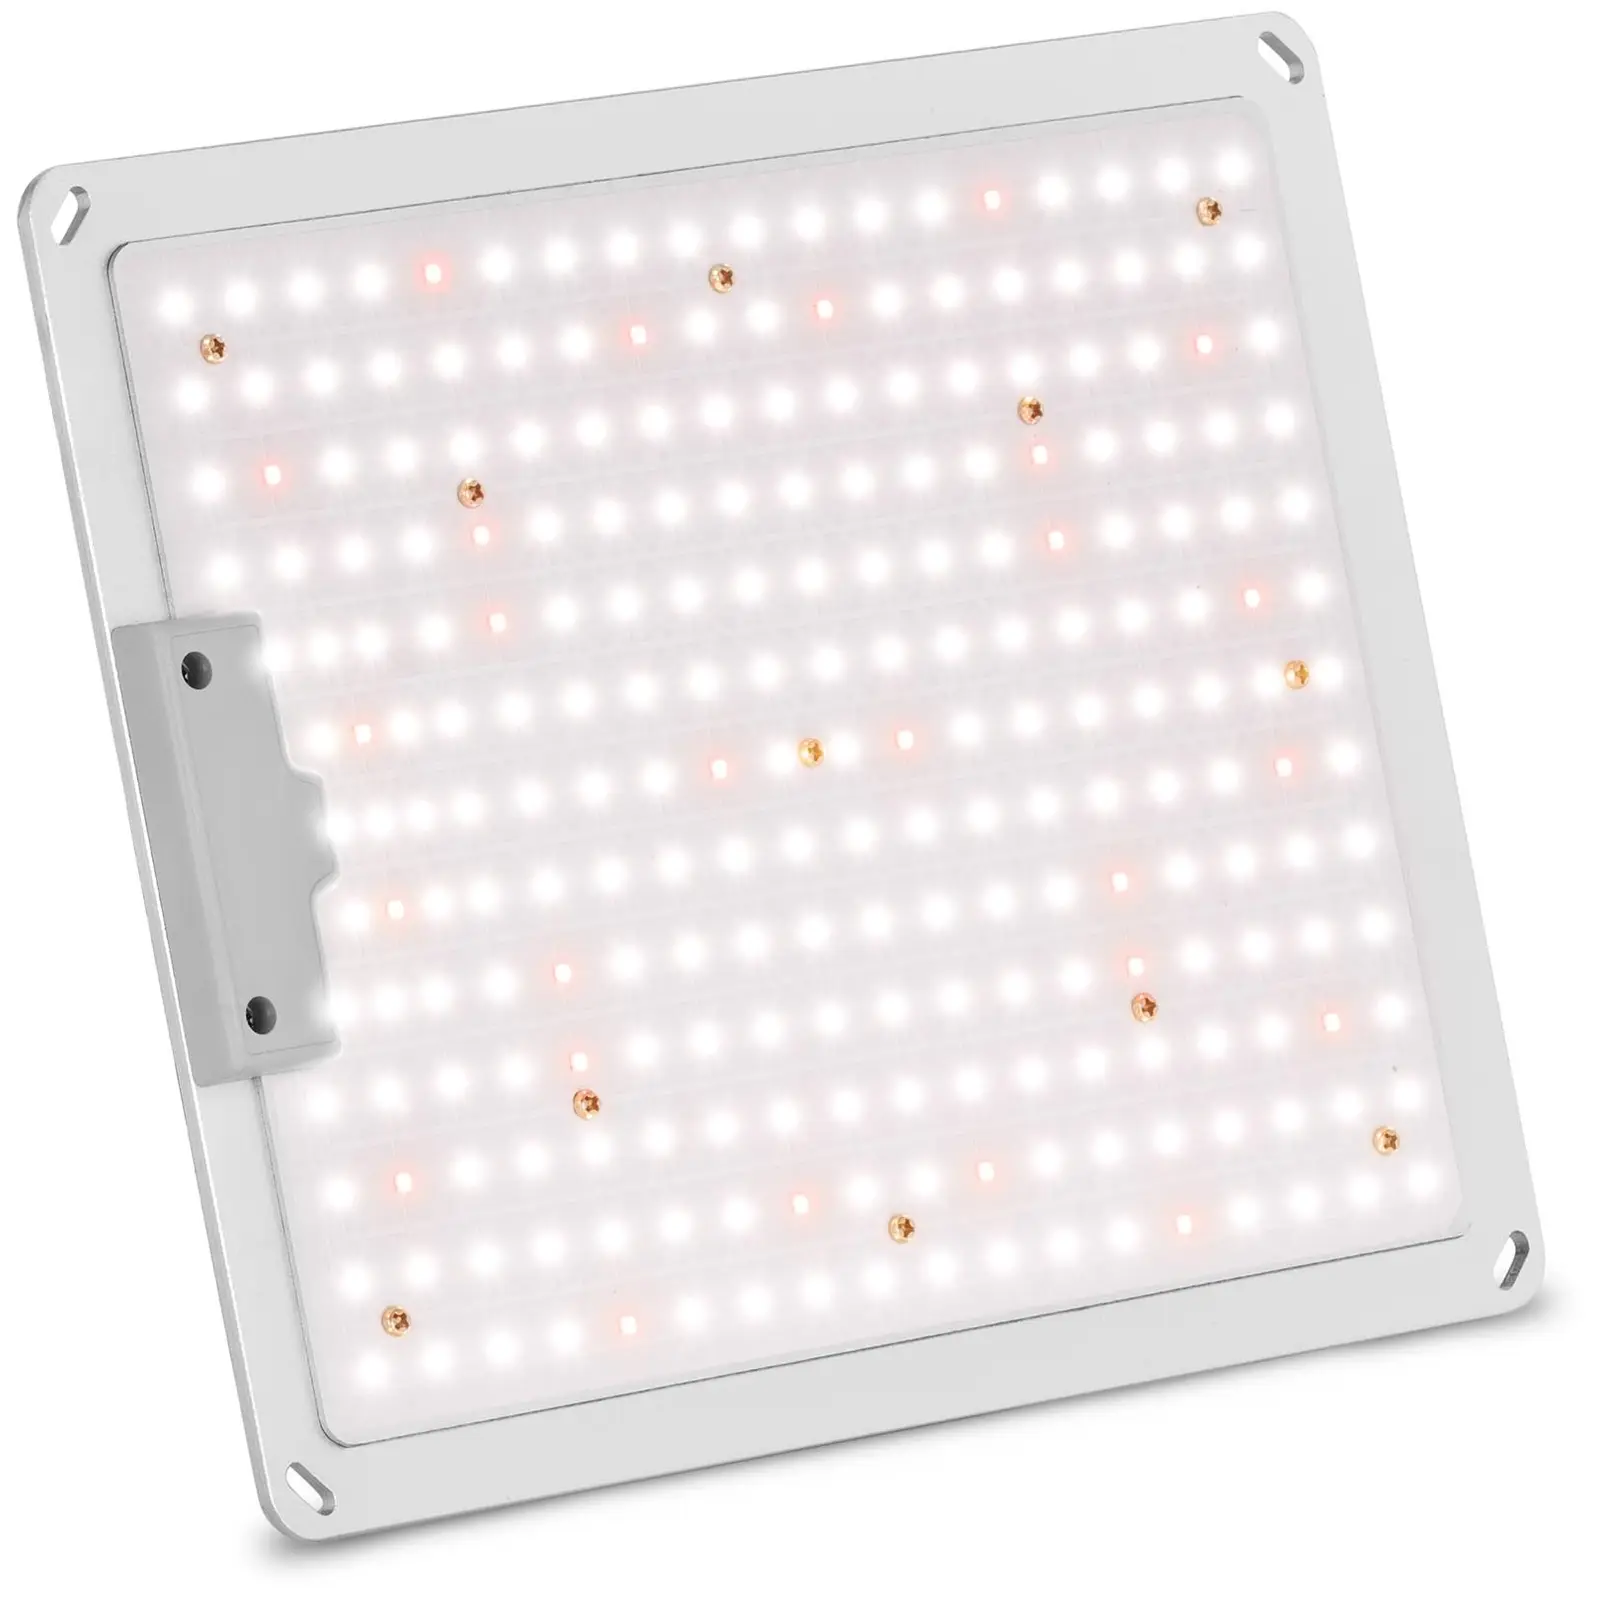 LED lempa augalams - pilno spektro - 110 W - 234 šviesos diodai - 10 000 liumenų